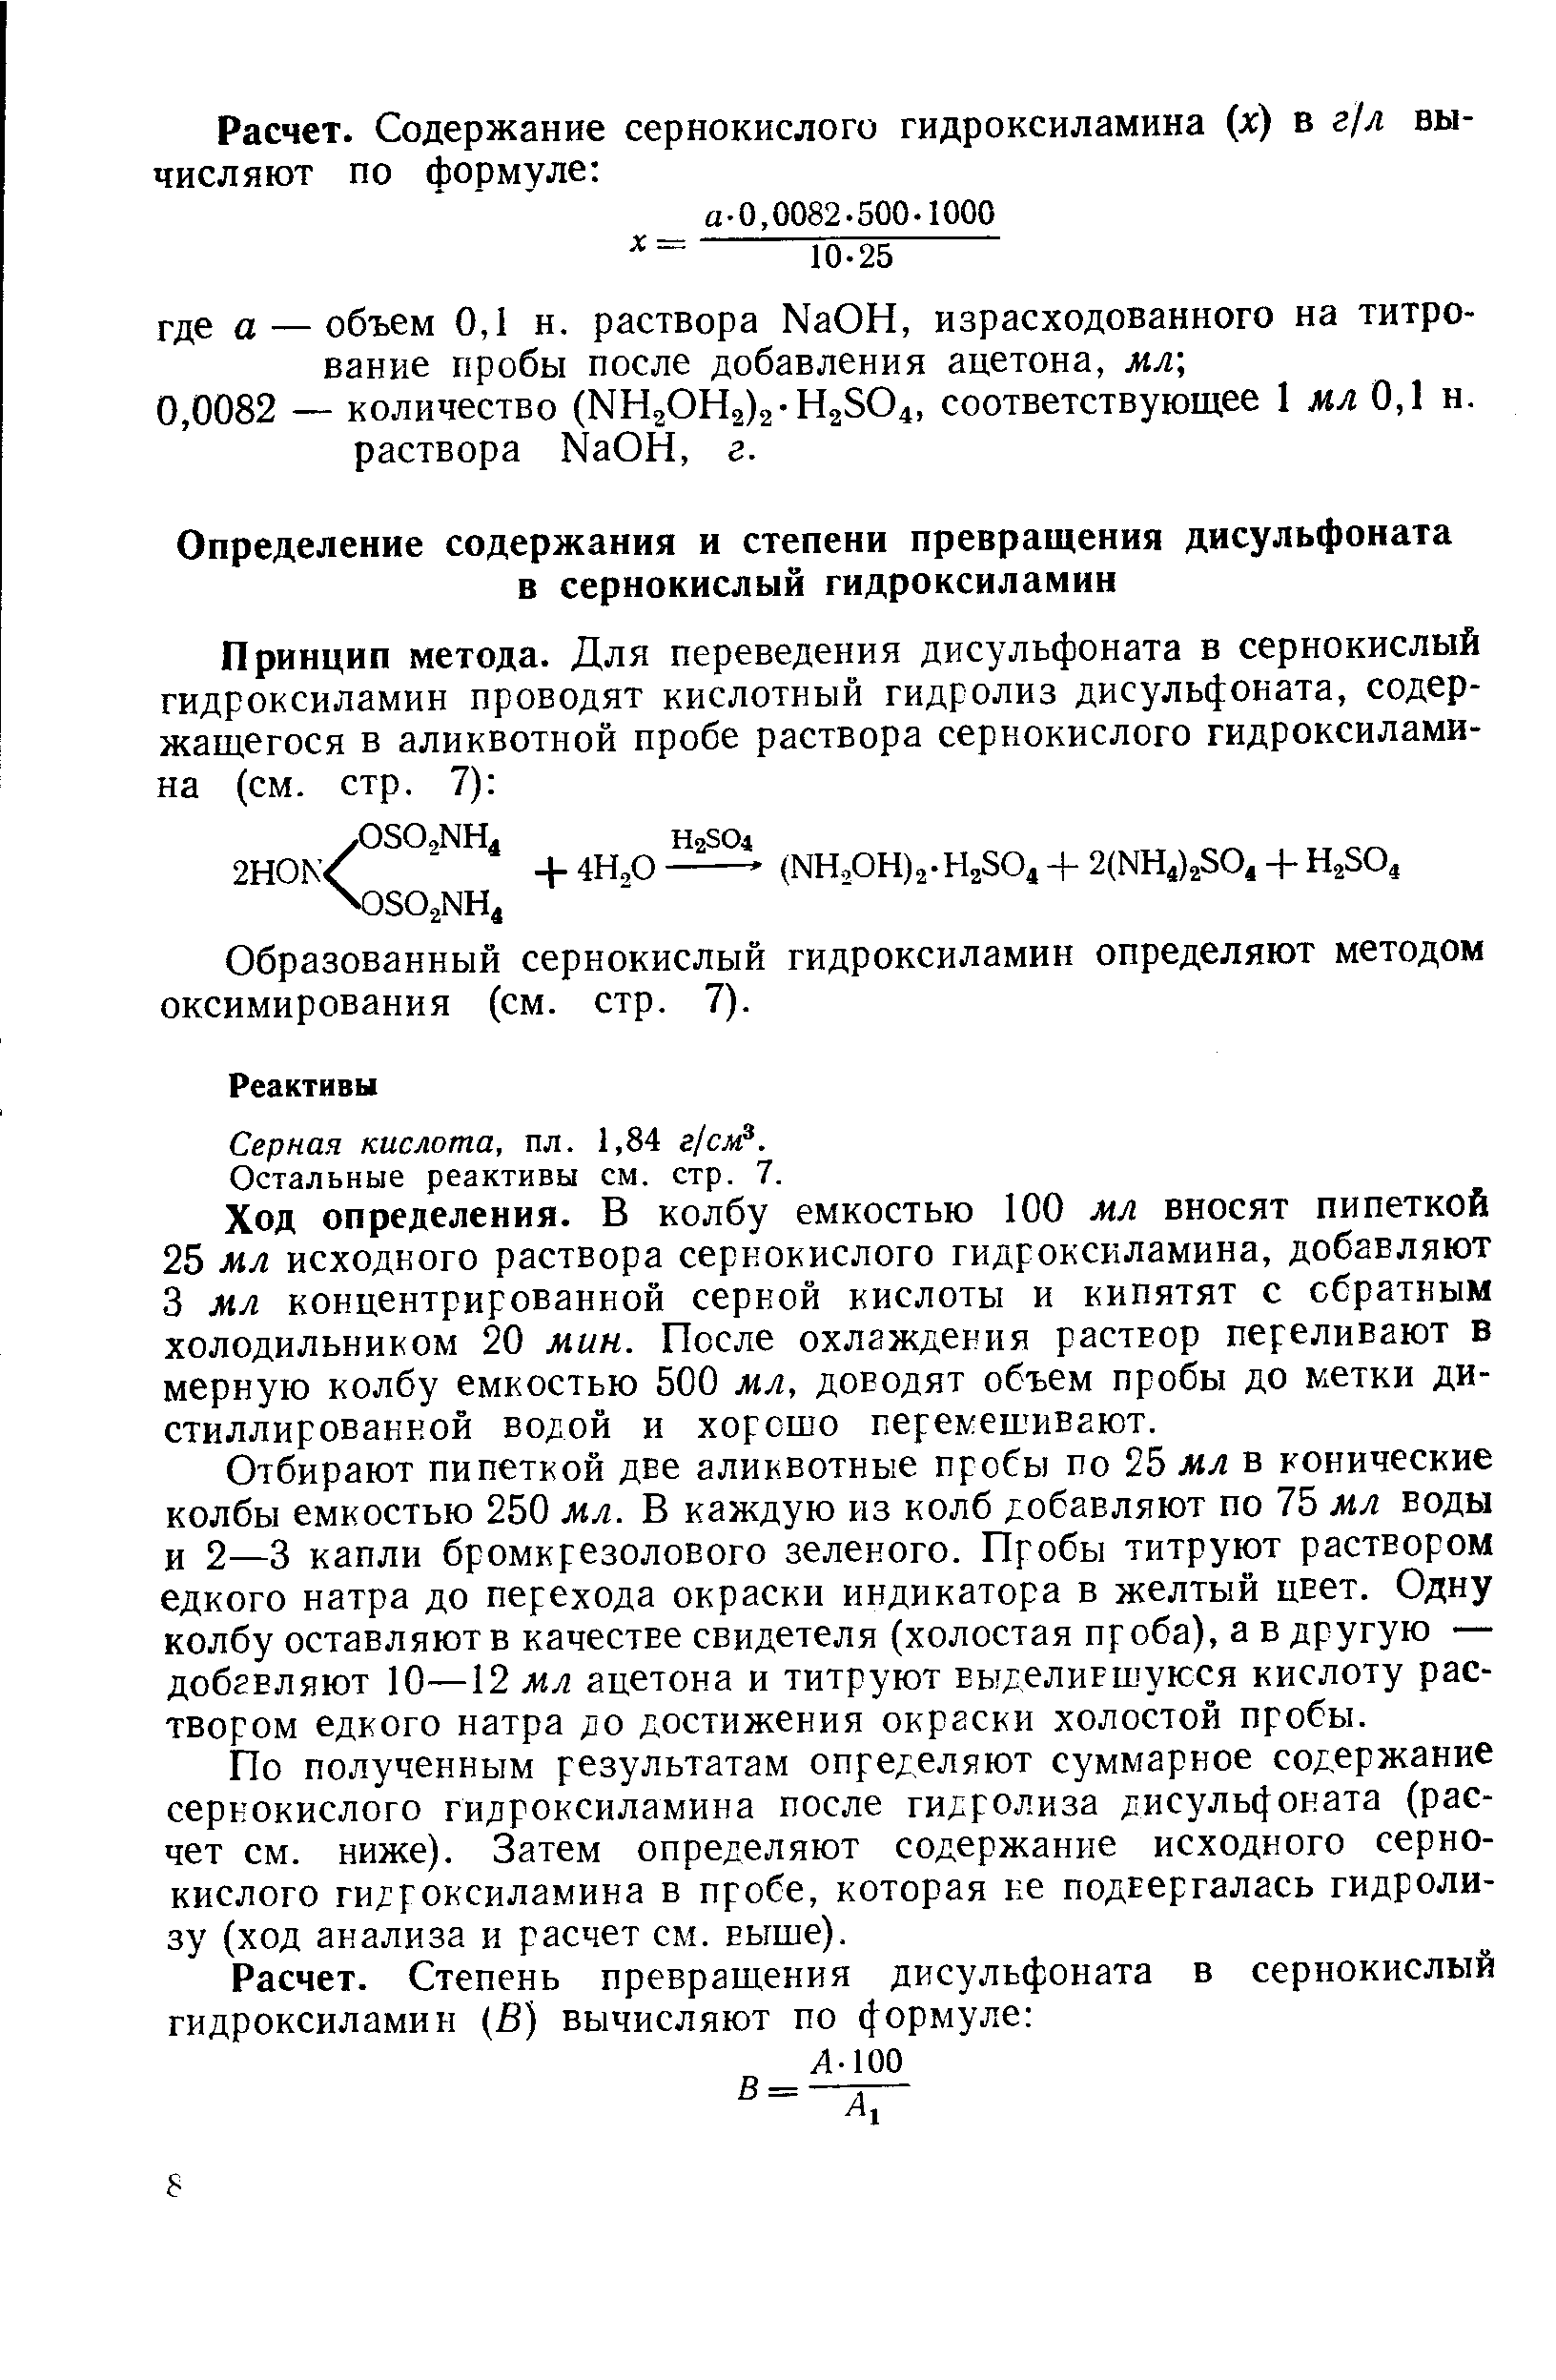 Образованный сернокислый гидроксиламин определяют методом оксимирования (см. стр. 7).